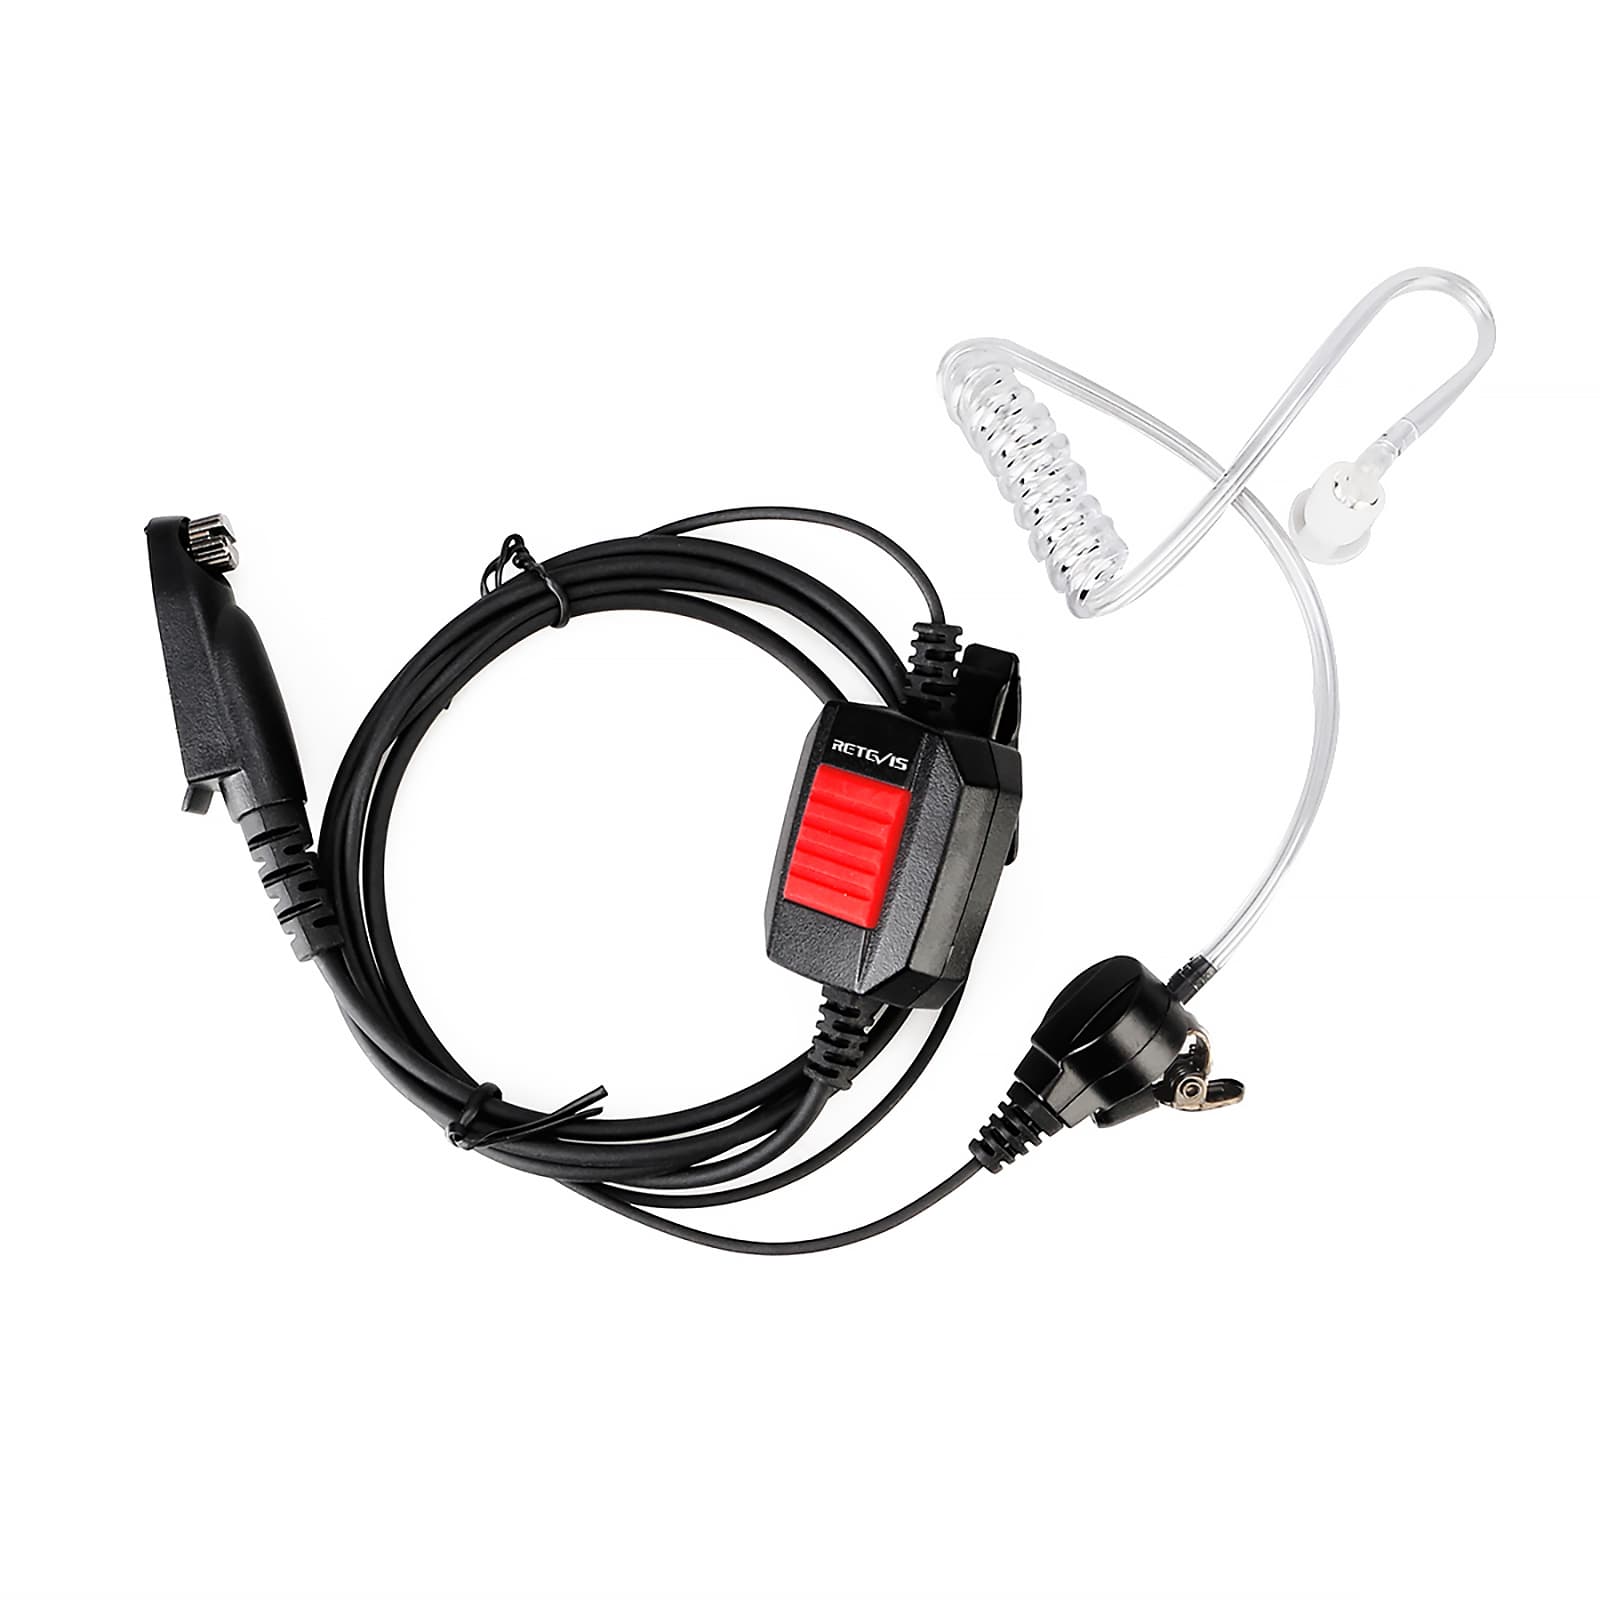 Retevis EA110M IP66 Waterproof Surveillance Earpiece for Ailunce HD1